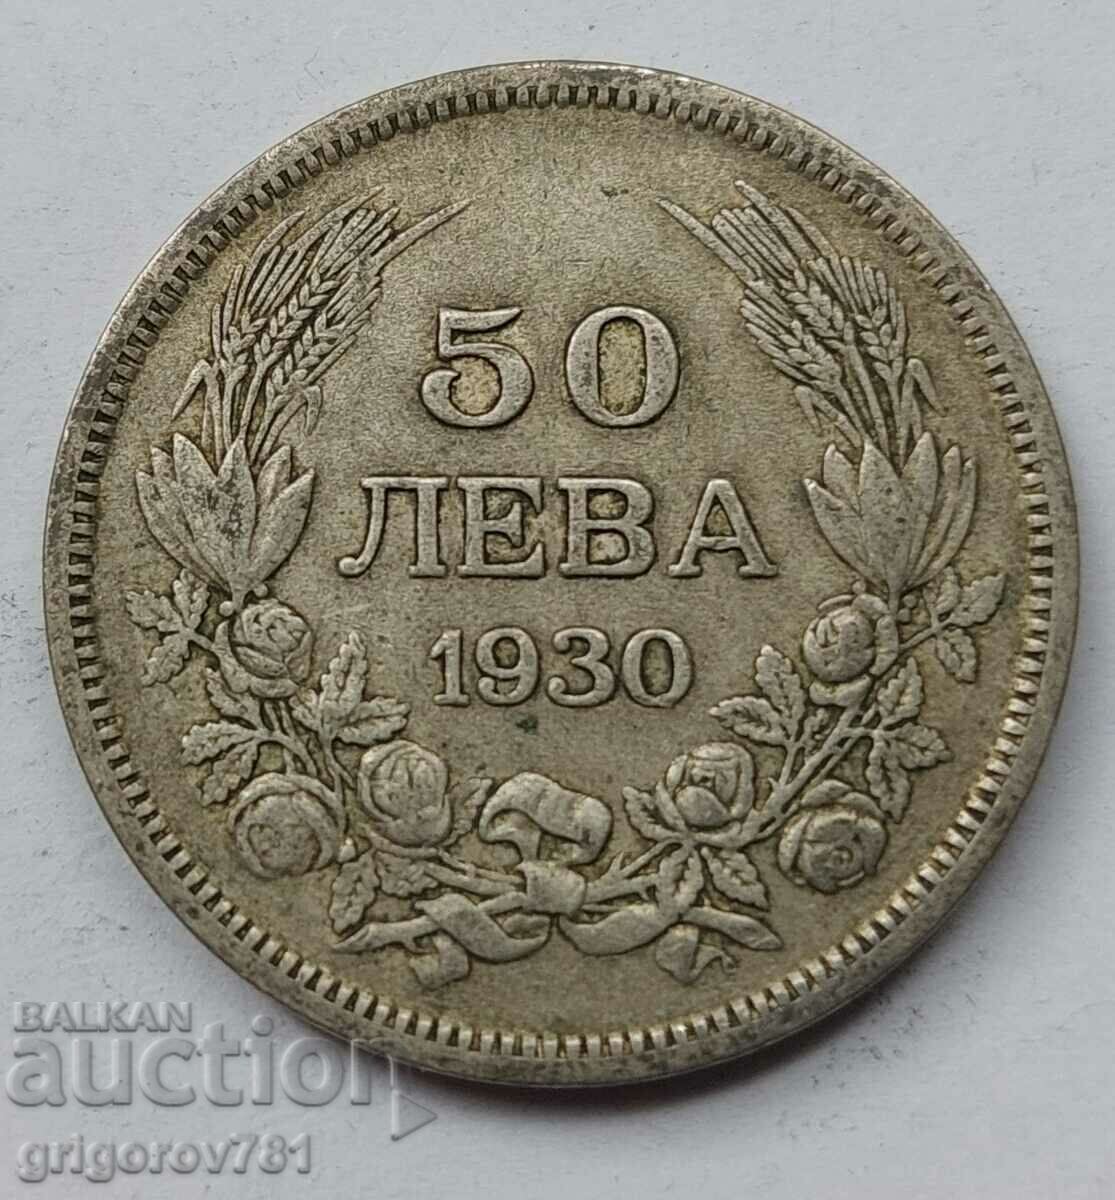 50 leva argint Bulgaria 1930 - monedă de argint #76